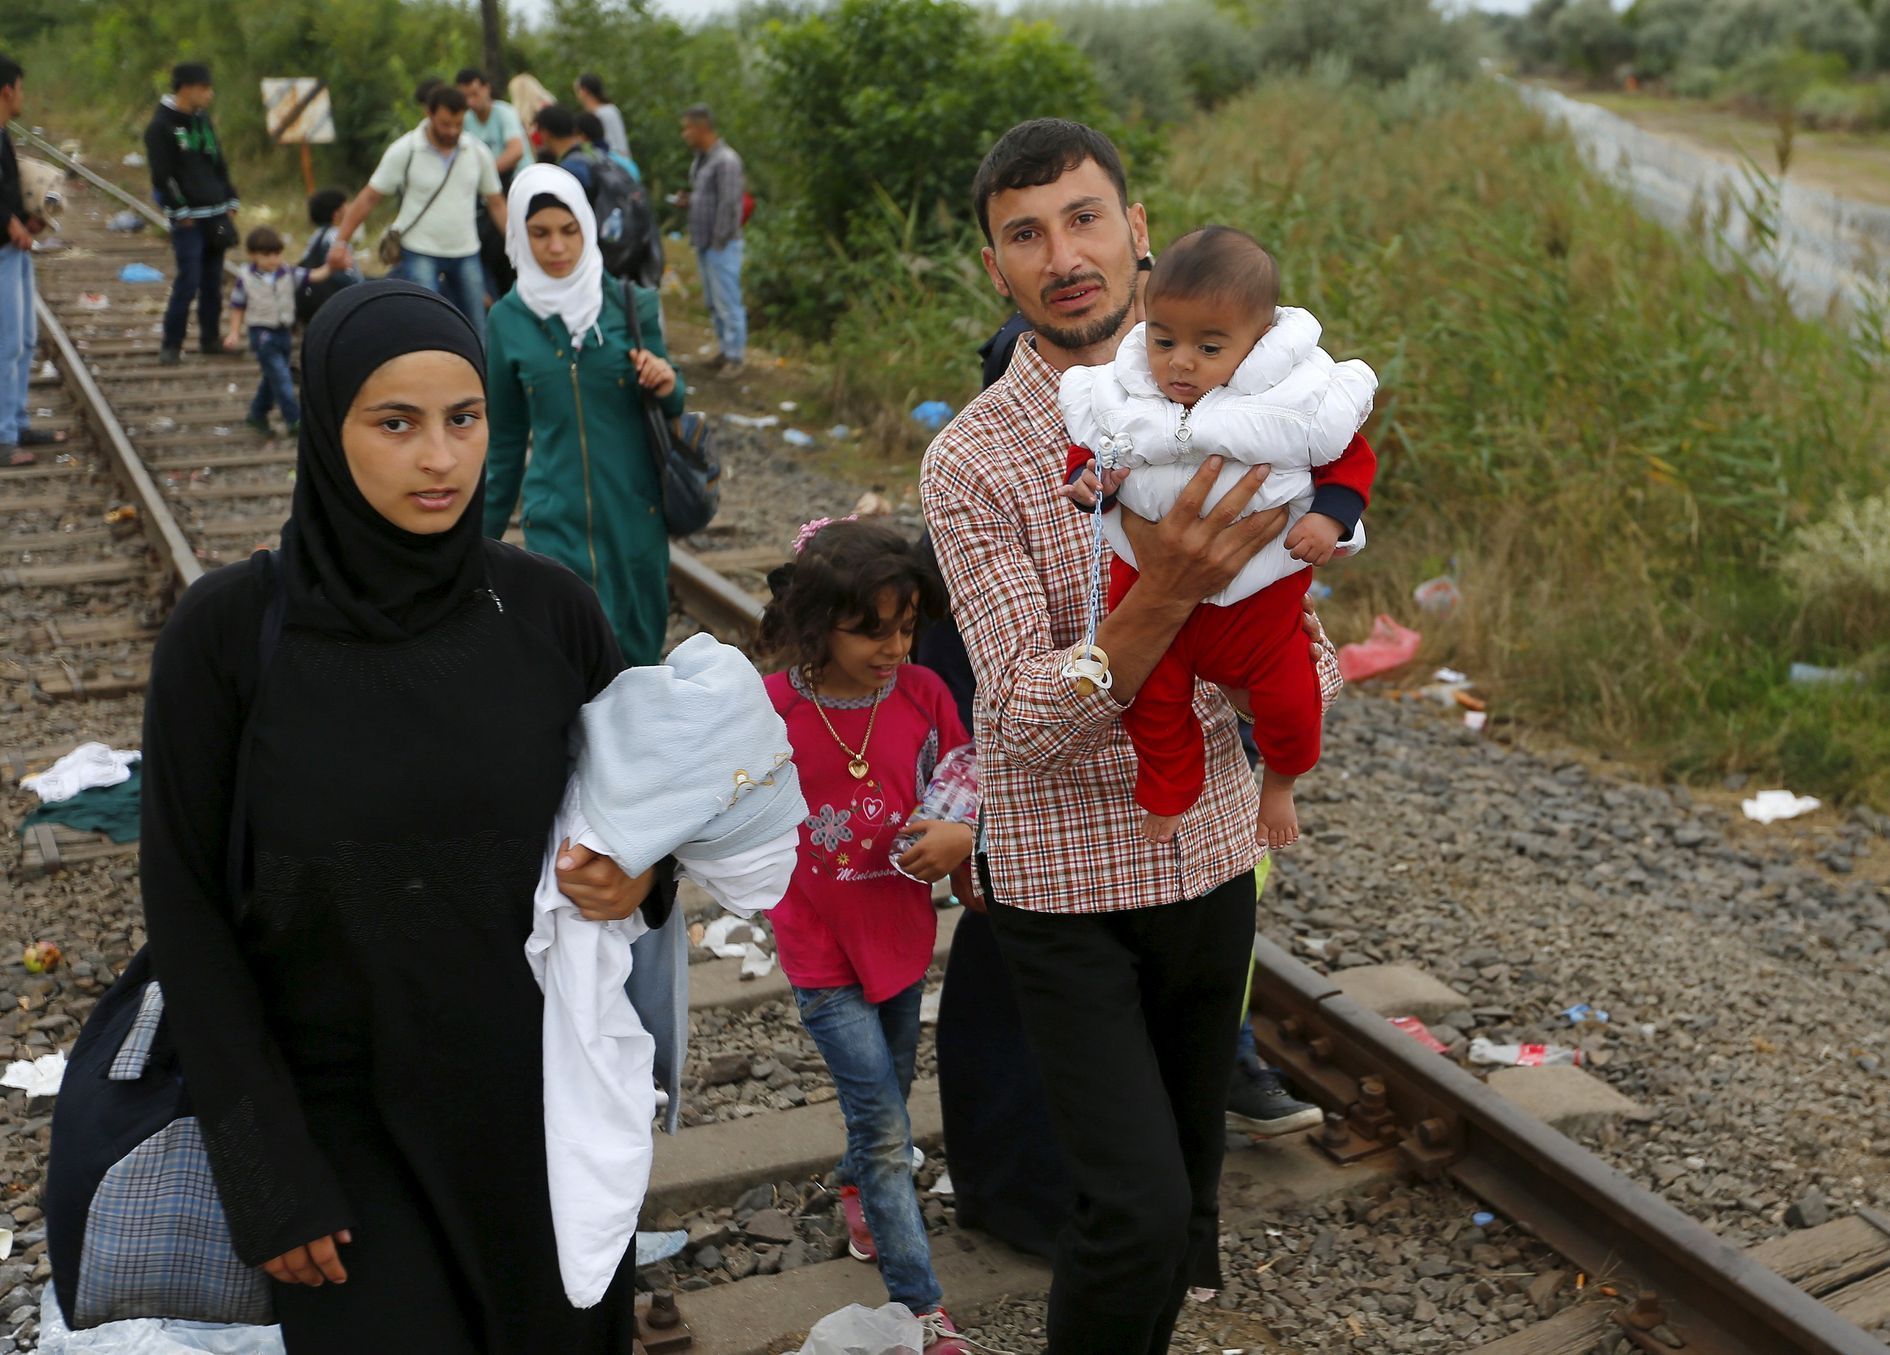 Děti uprchlíků na cestě do Evropy